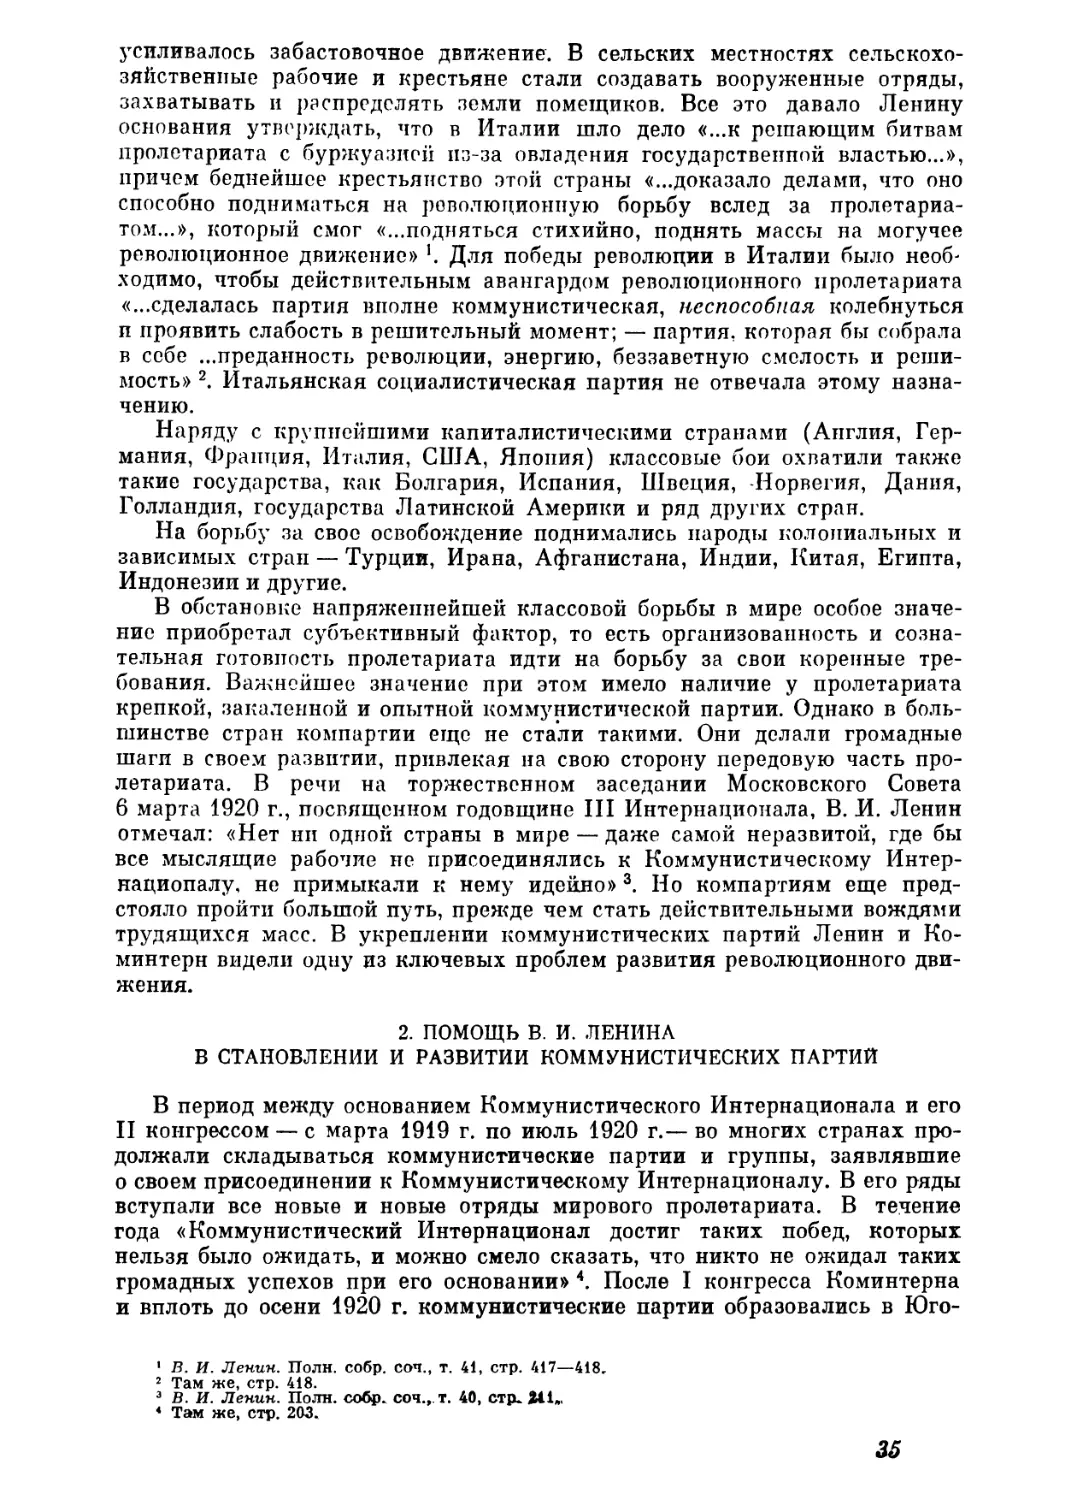 2. Помощь В. И. Ленина в становлении и развитии коммунистических партии